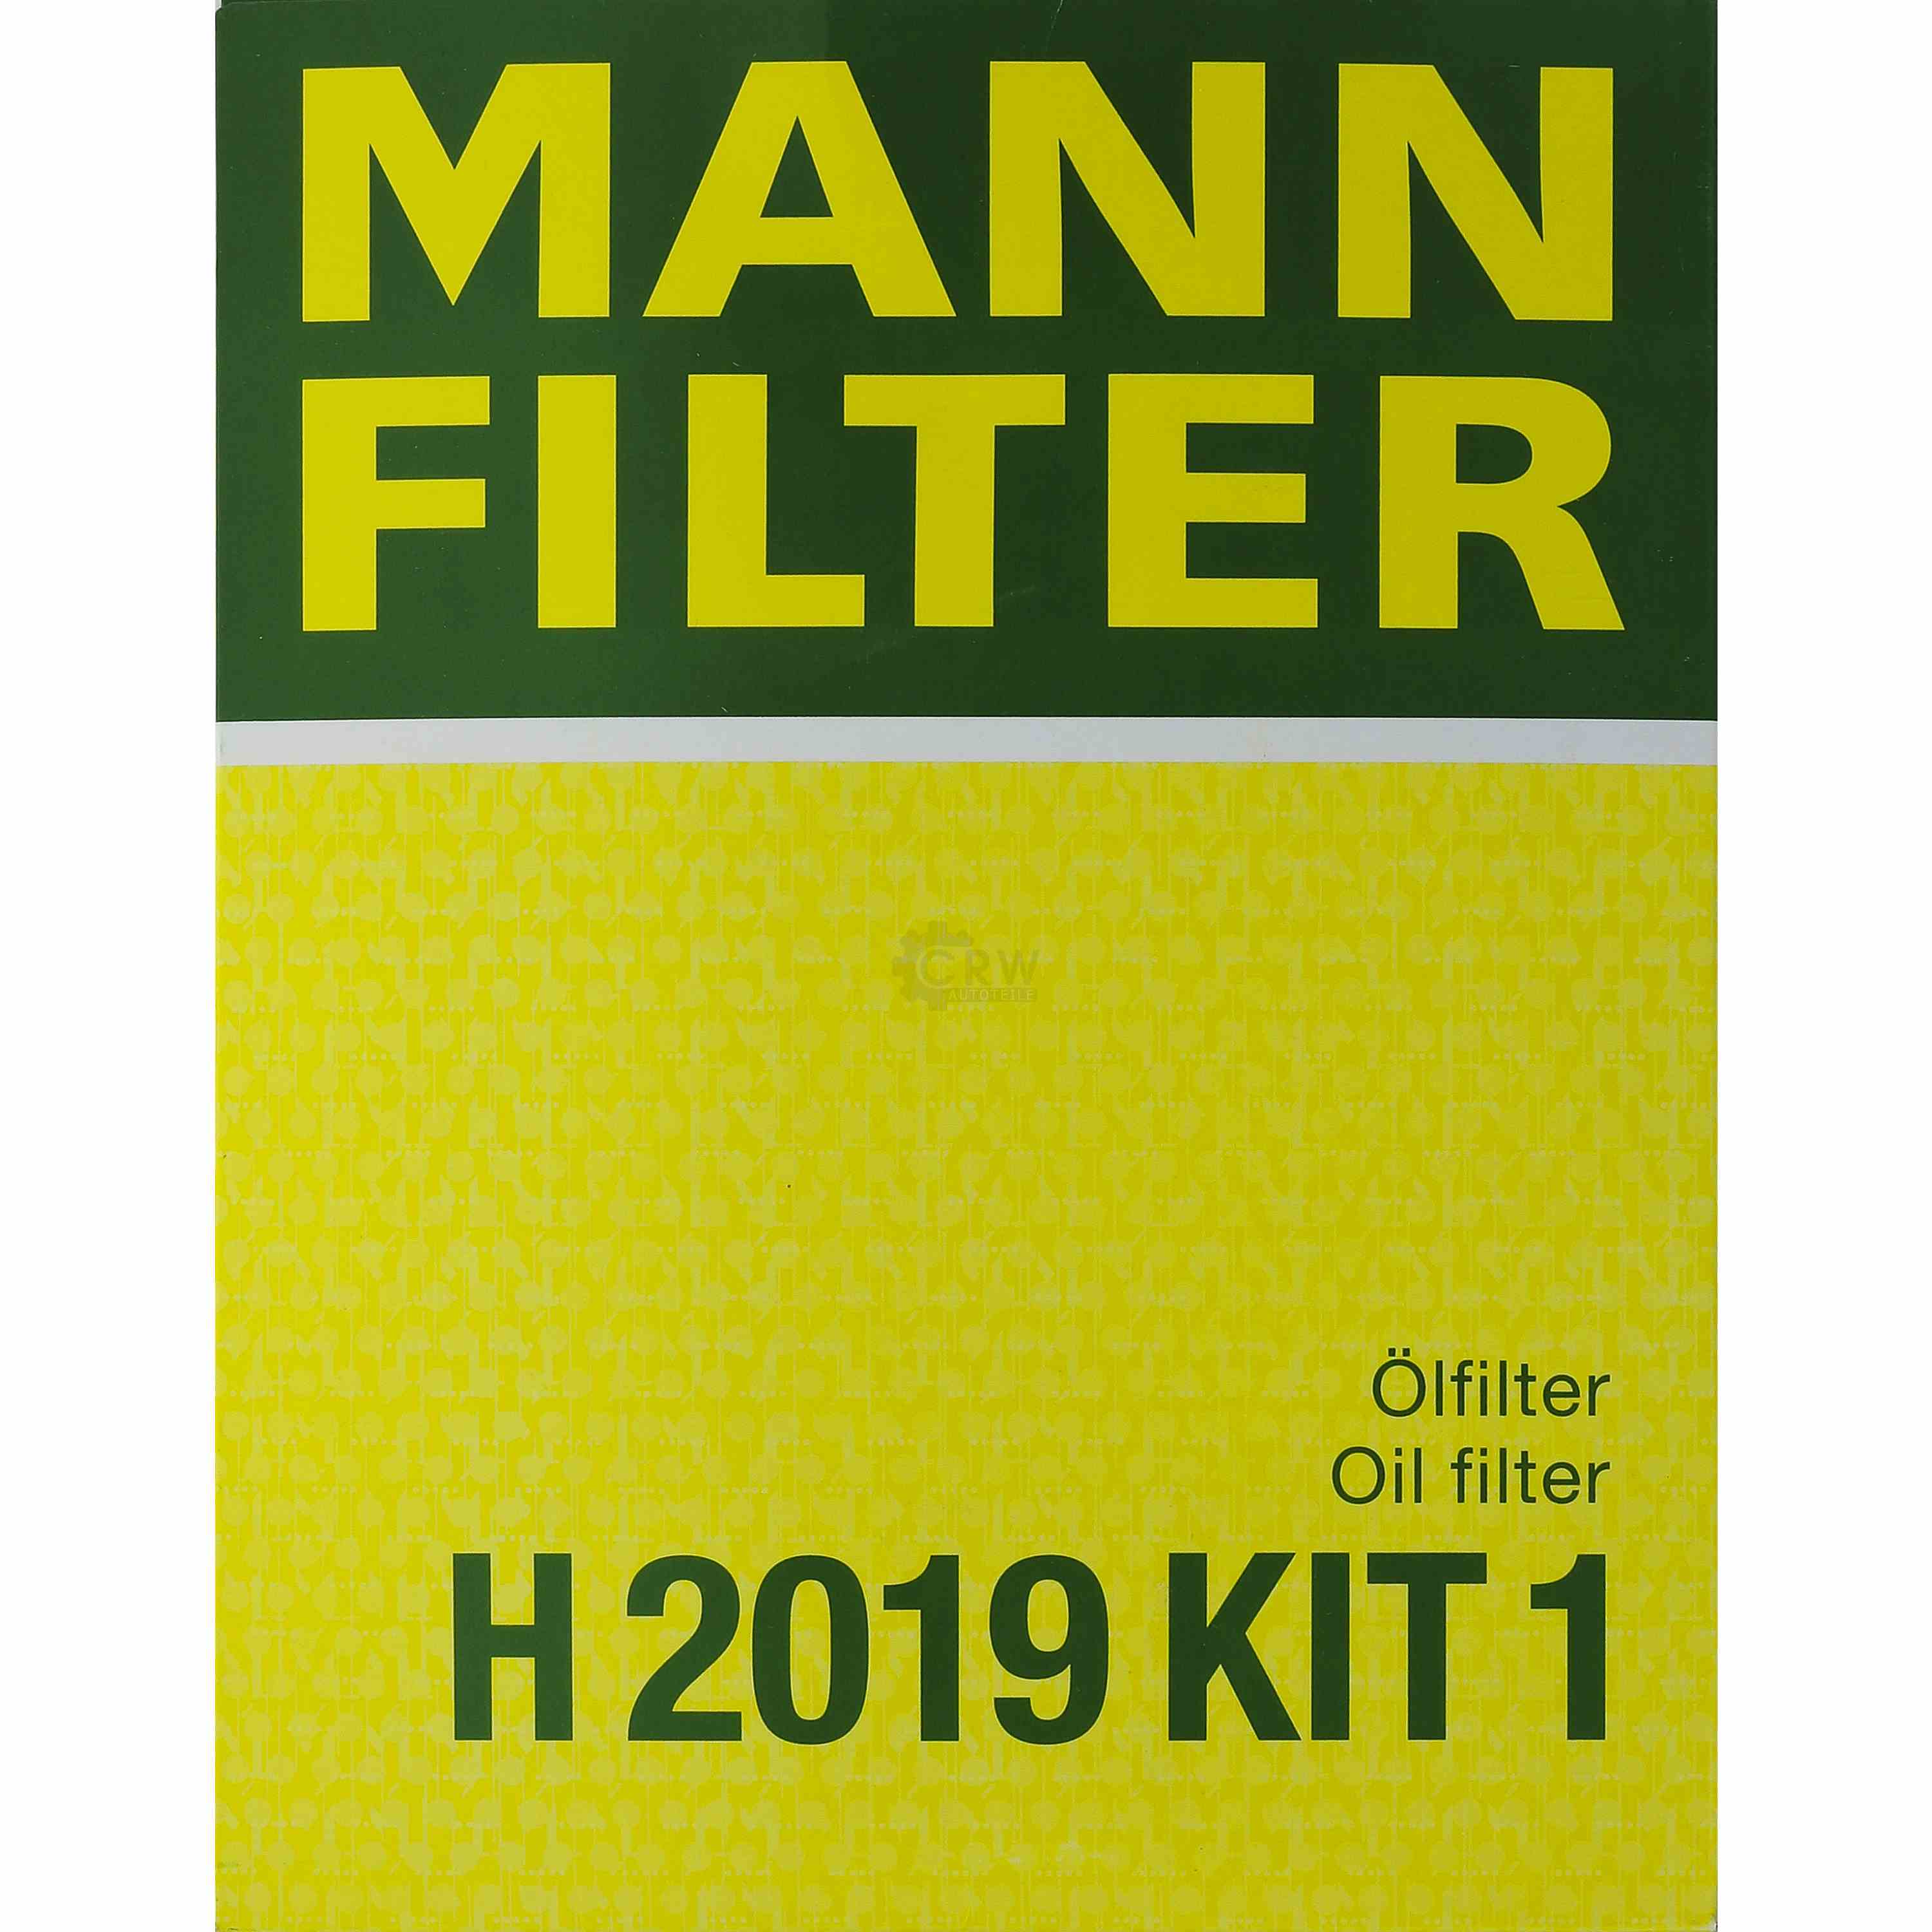 MANN-FILTER Getriebeölfilter für Automatikgetriebe H 2019 KIT 1 VW Gruppe